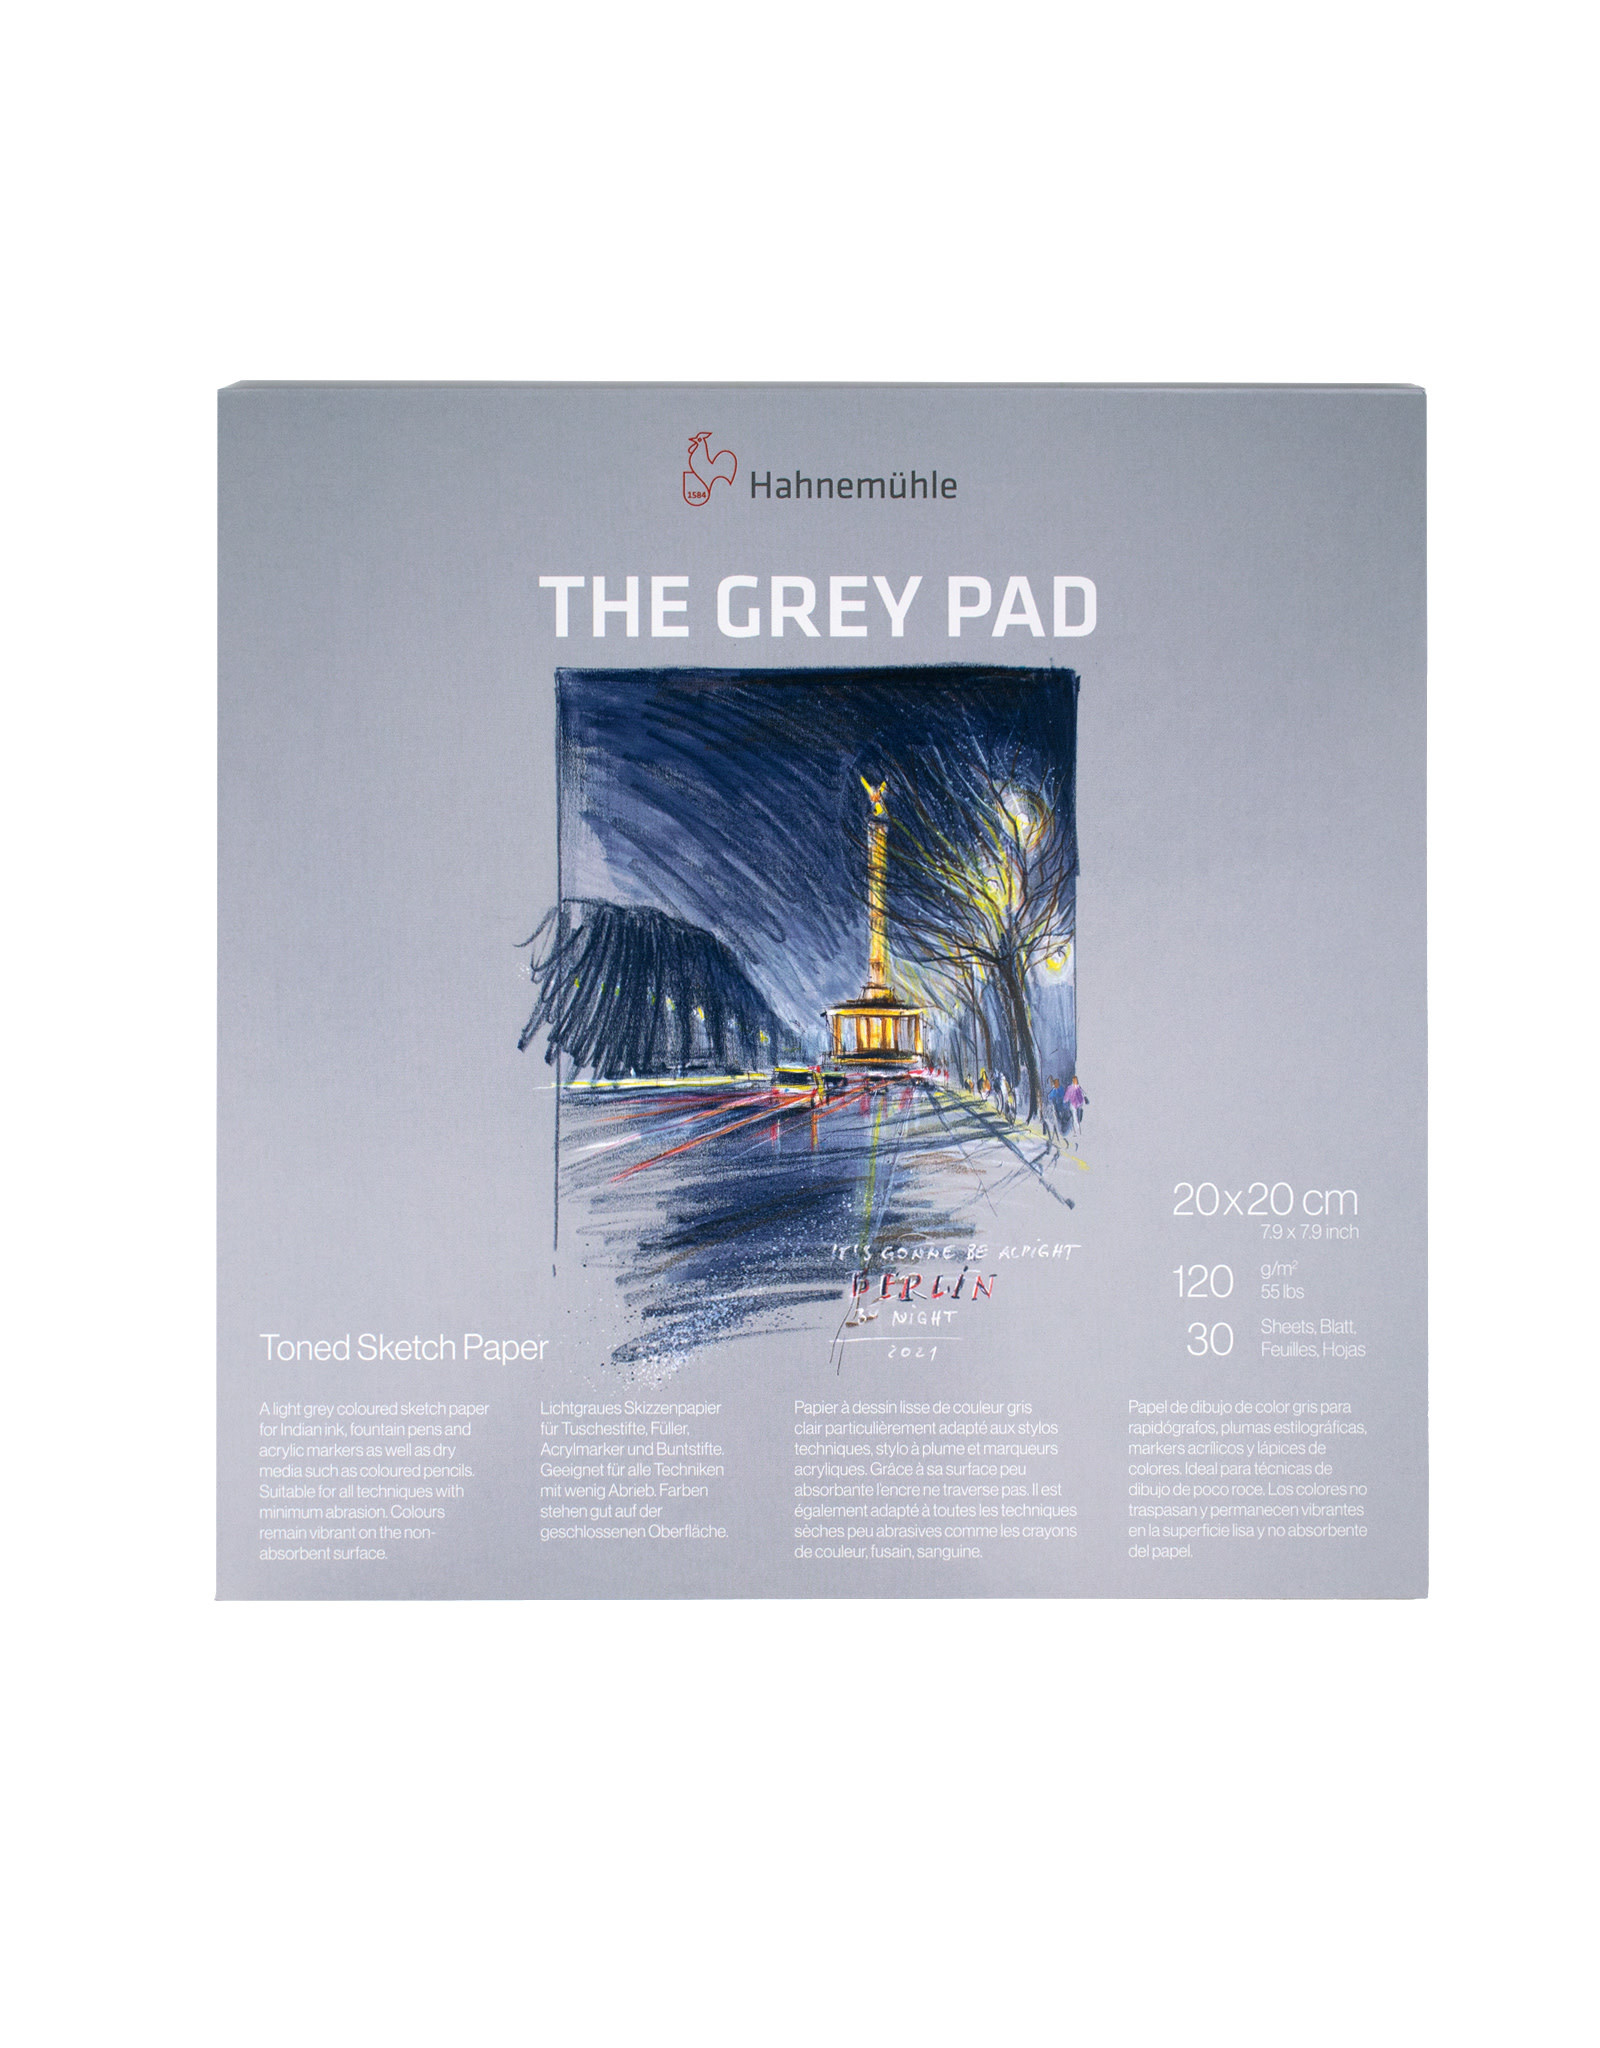 Hahnemuhle Hahnemuhle The Grey Pad, 20cm x 20cm(7.9” x 7.9”)